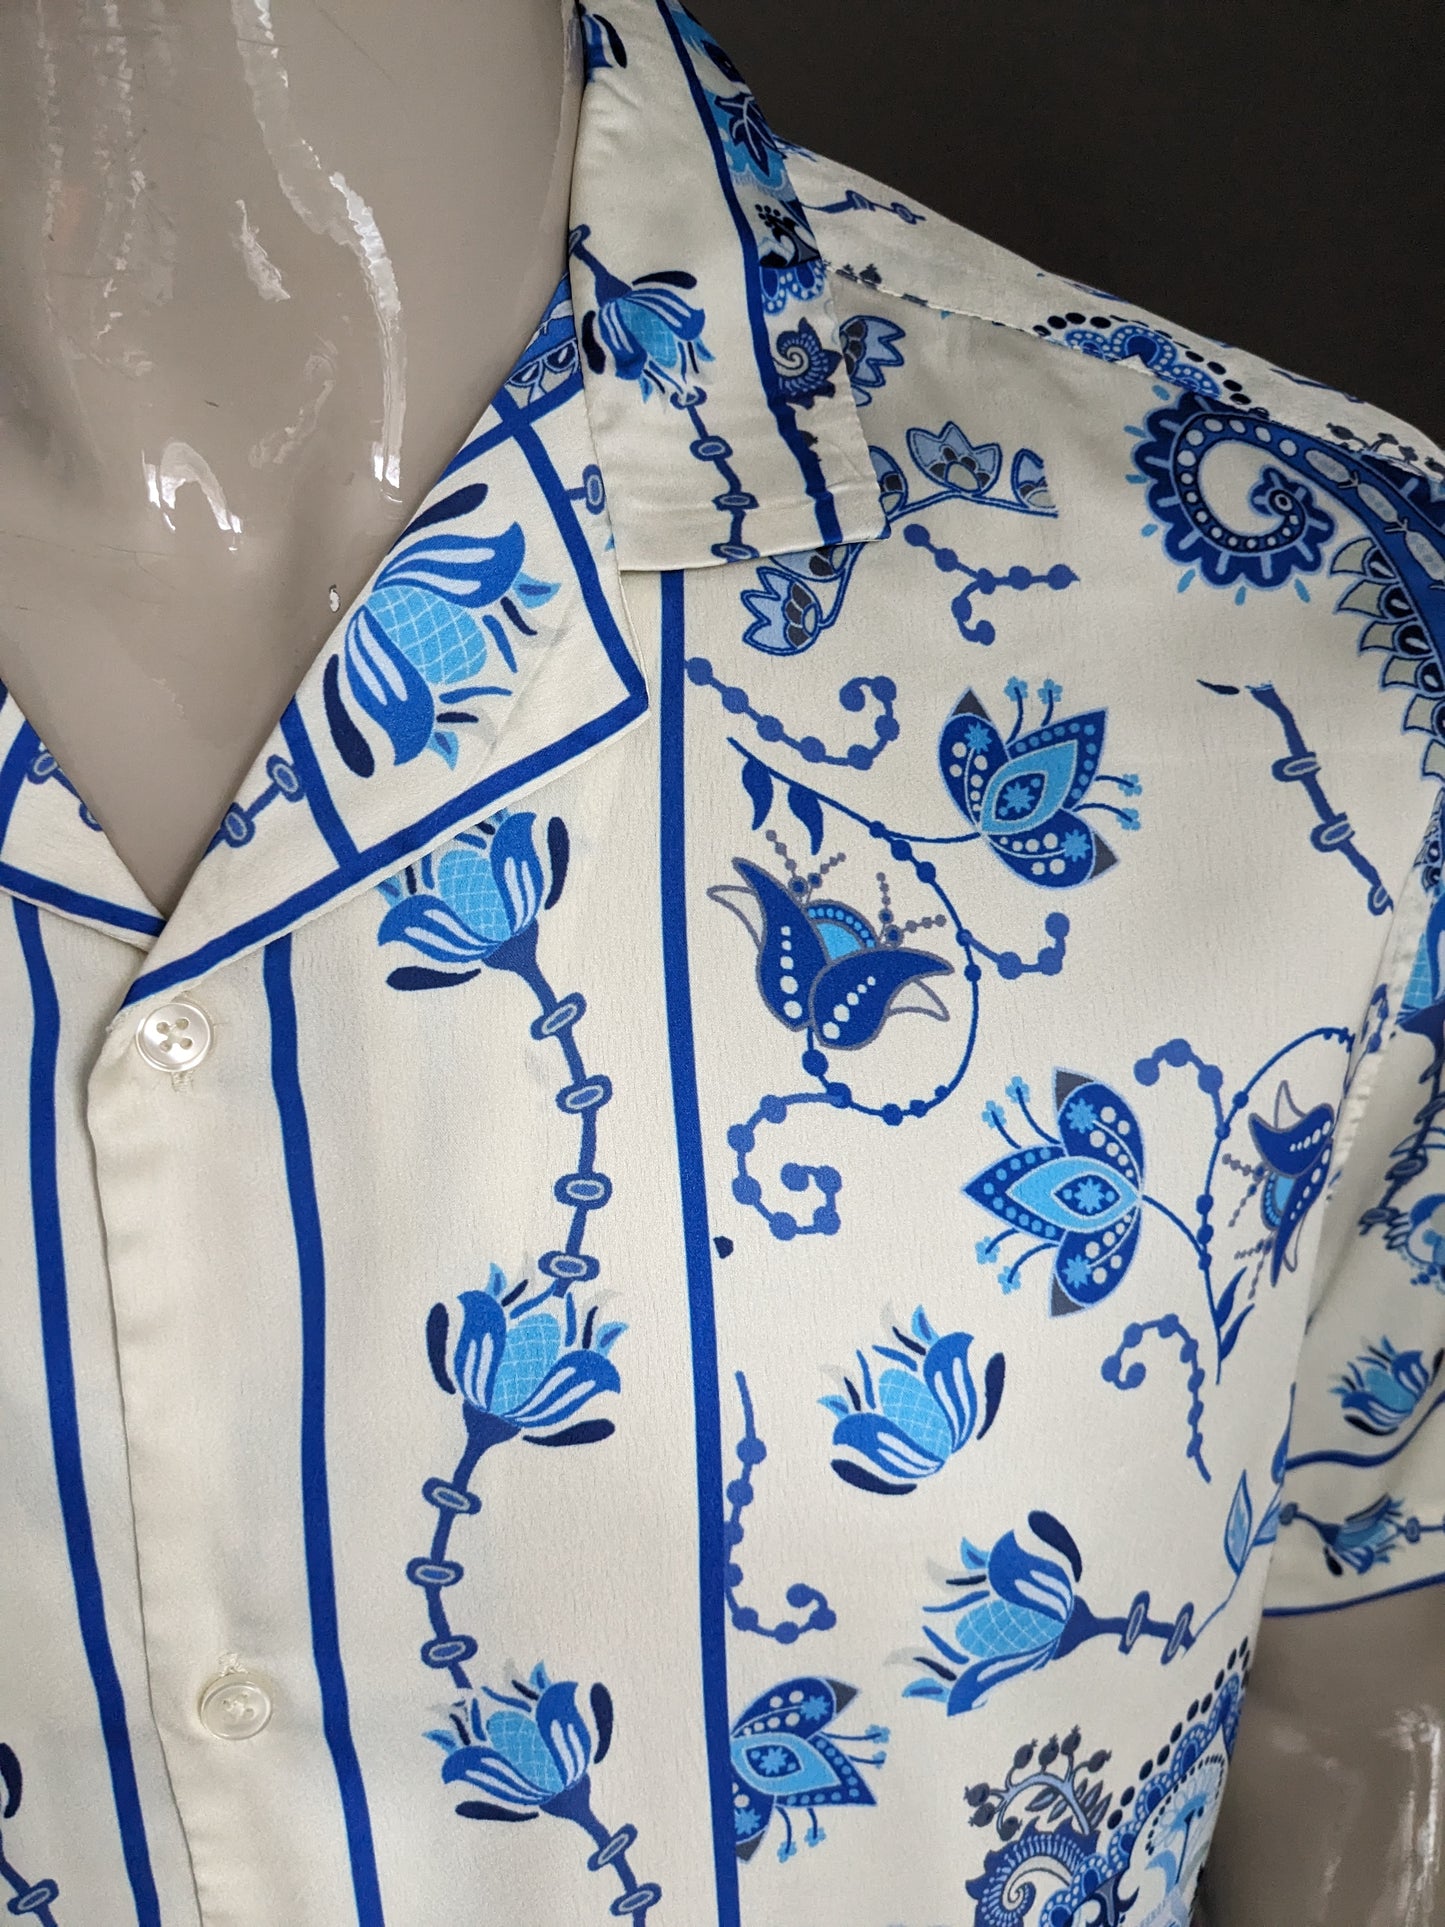 Shirt design ASOS manica corta. Stampa di fiori blu beige. Taglia XL.